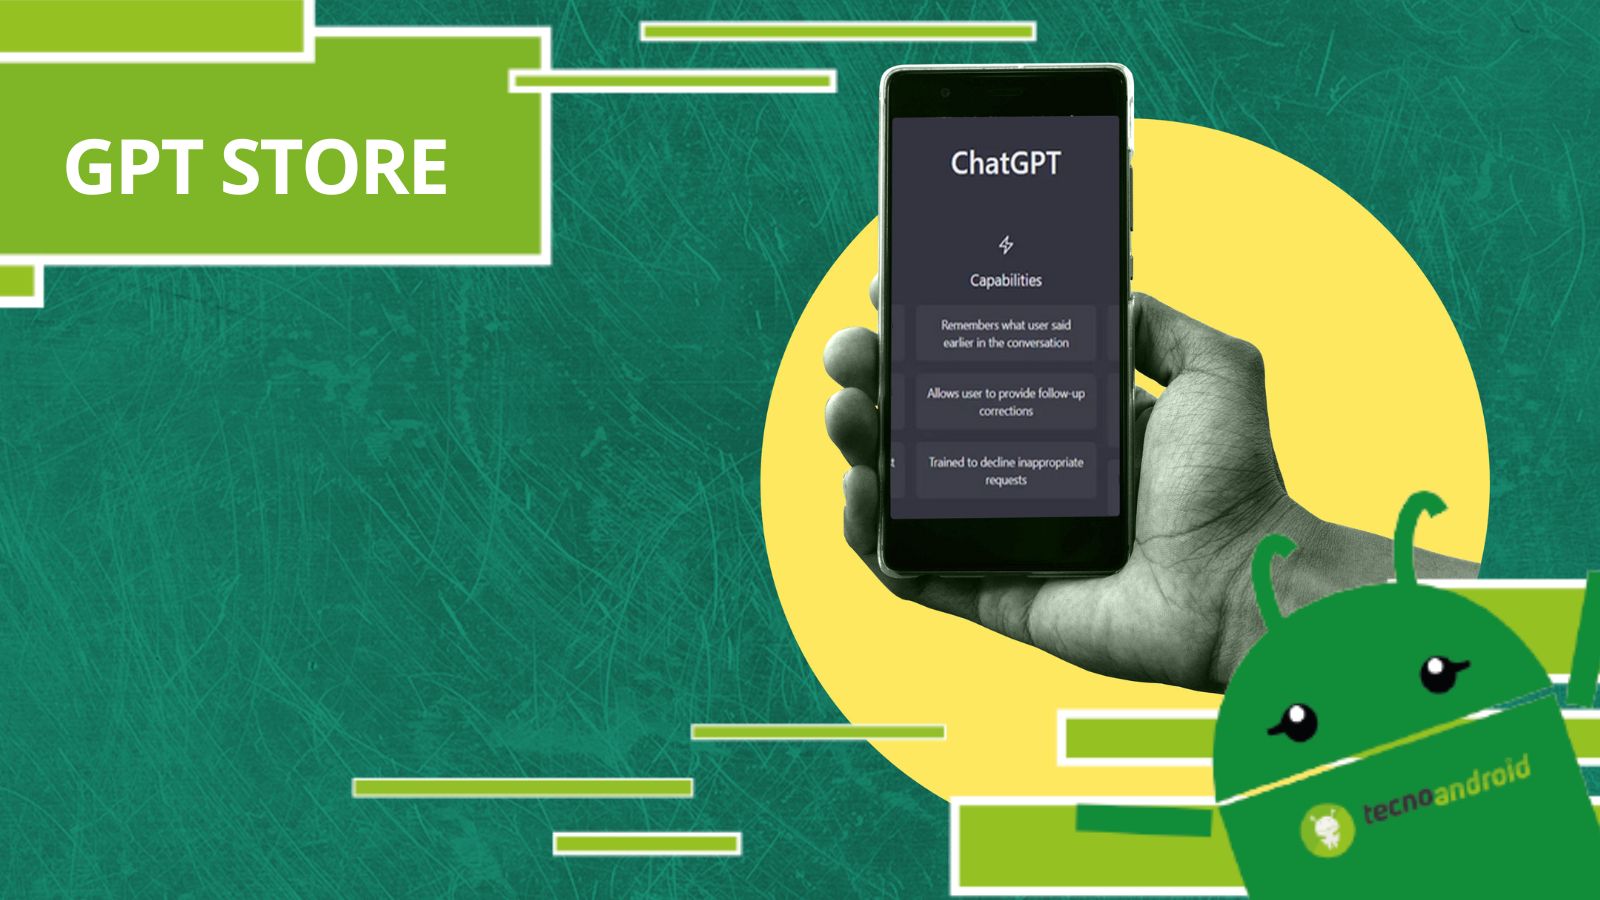 ChatGPT, i segreti per utilizzare GPT Store sulla piattaforma